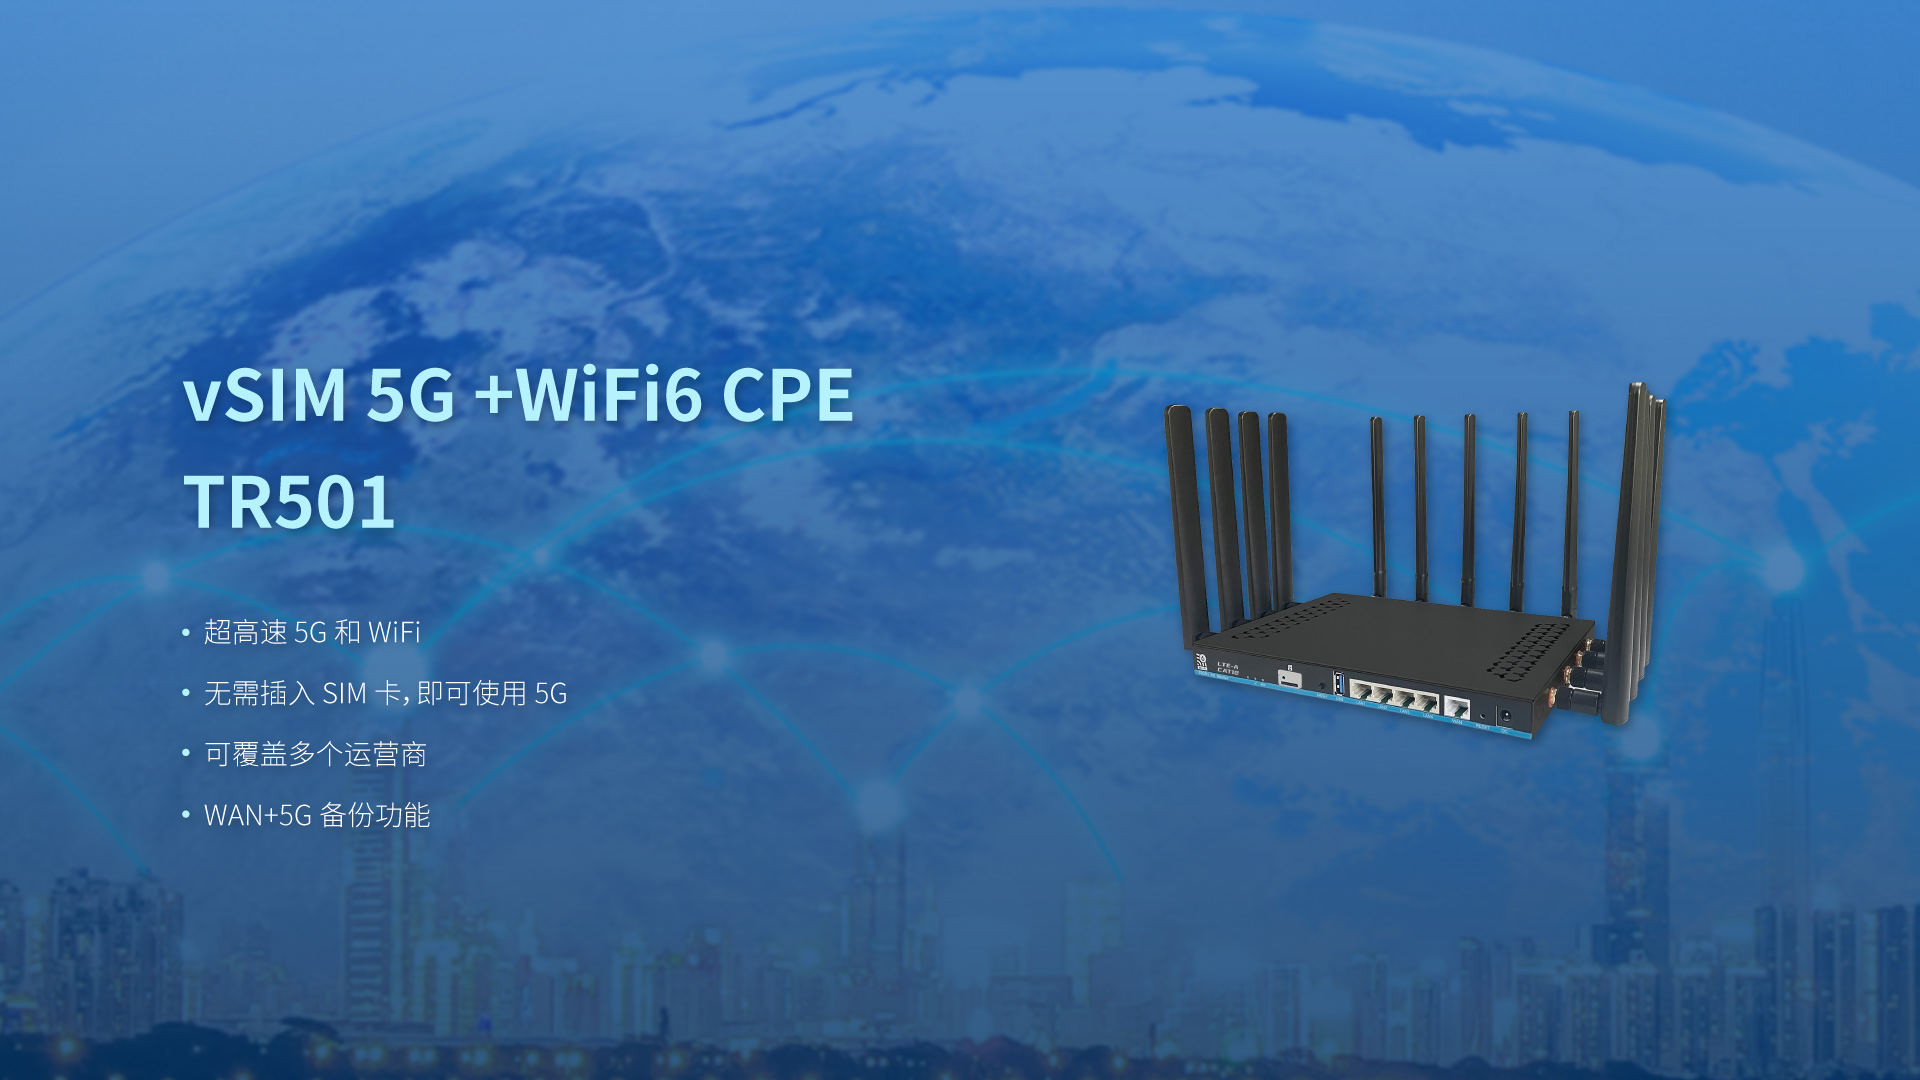 4G CAT12+WiFi6 CP TR501